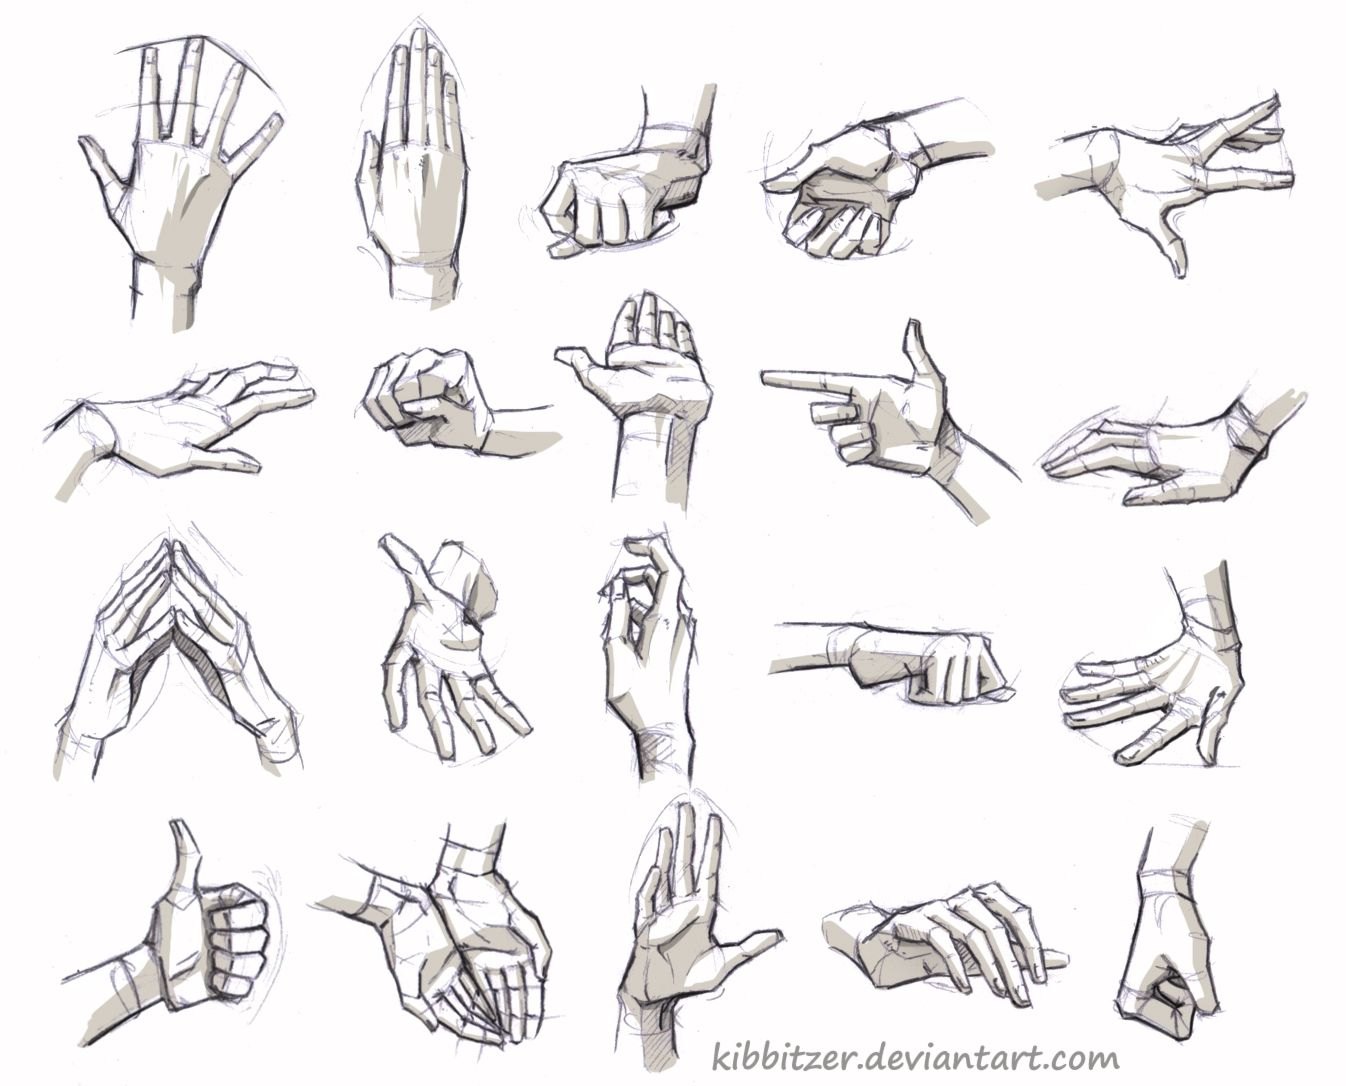 Кисть руки сбоку референс. Рука вид сбоку референс. Руки в разных ракурсах. Анатомия рук для рисования. Mains simple